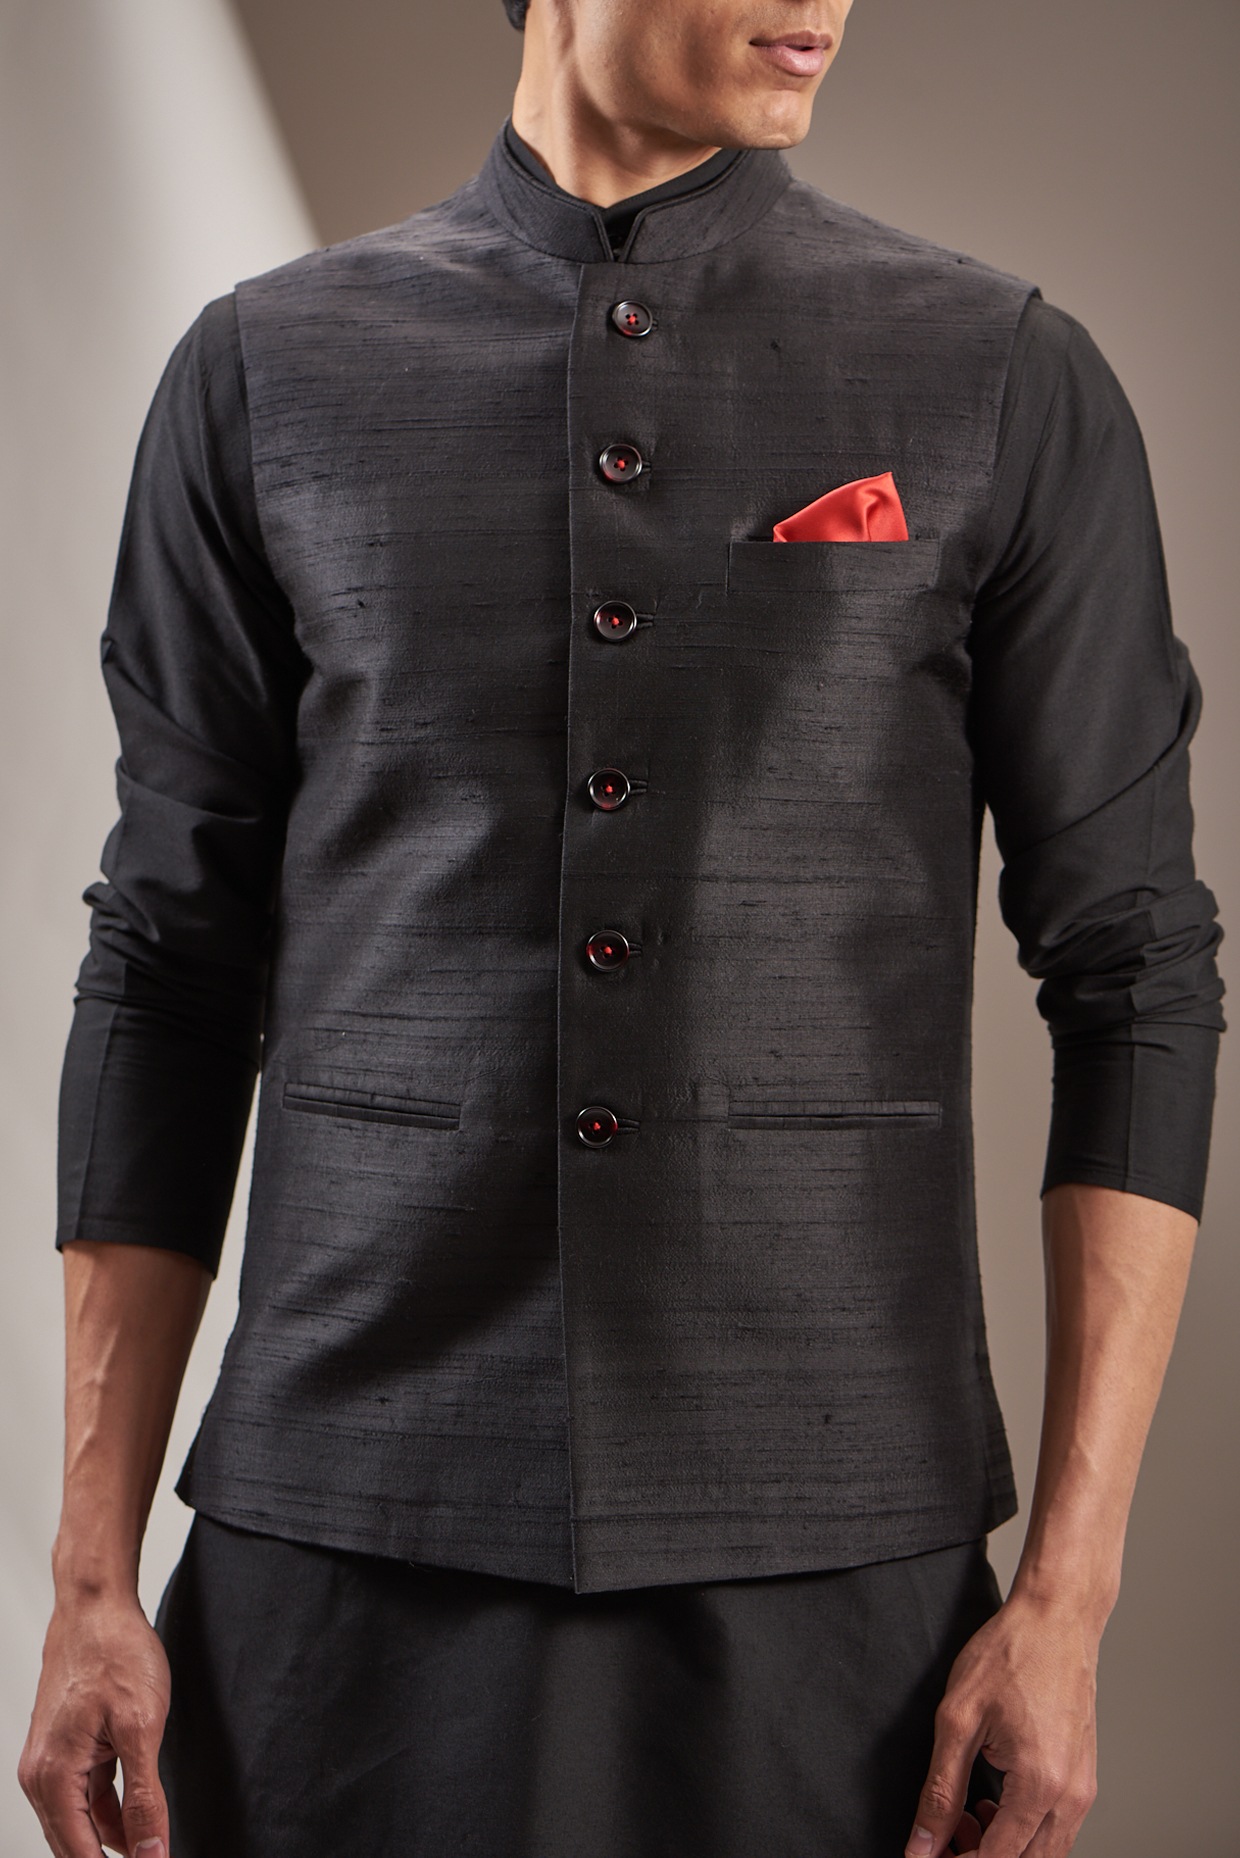 Eclipse Wine Textured Nehru Jacket | Nehru jackets, Jackets, Fashion outfits